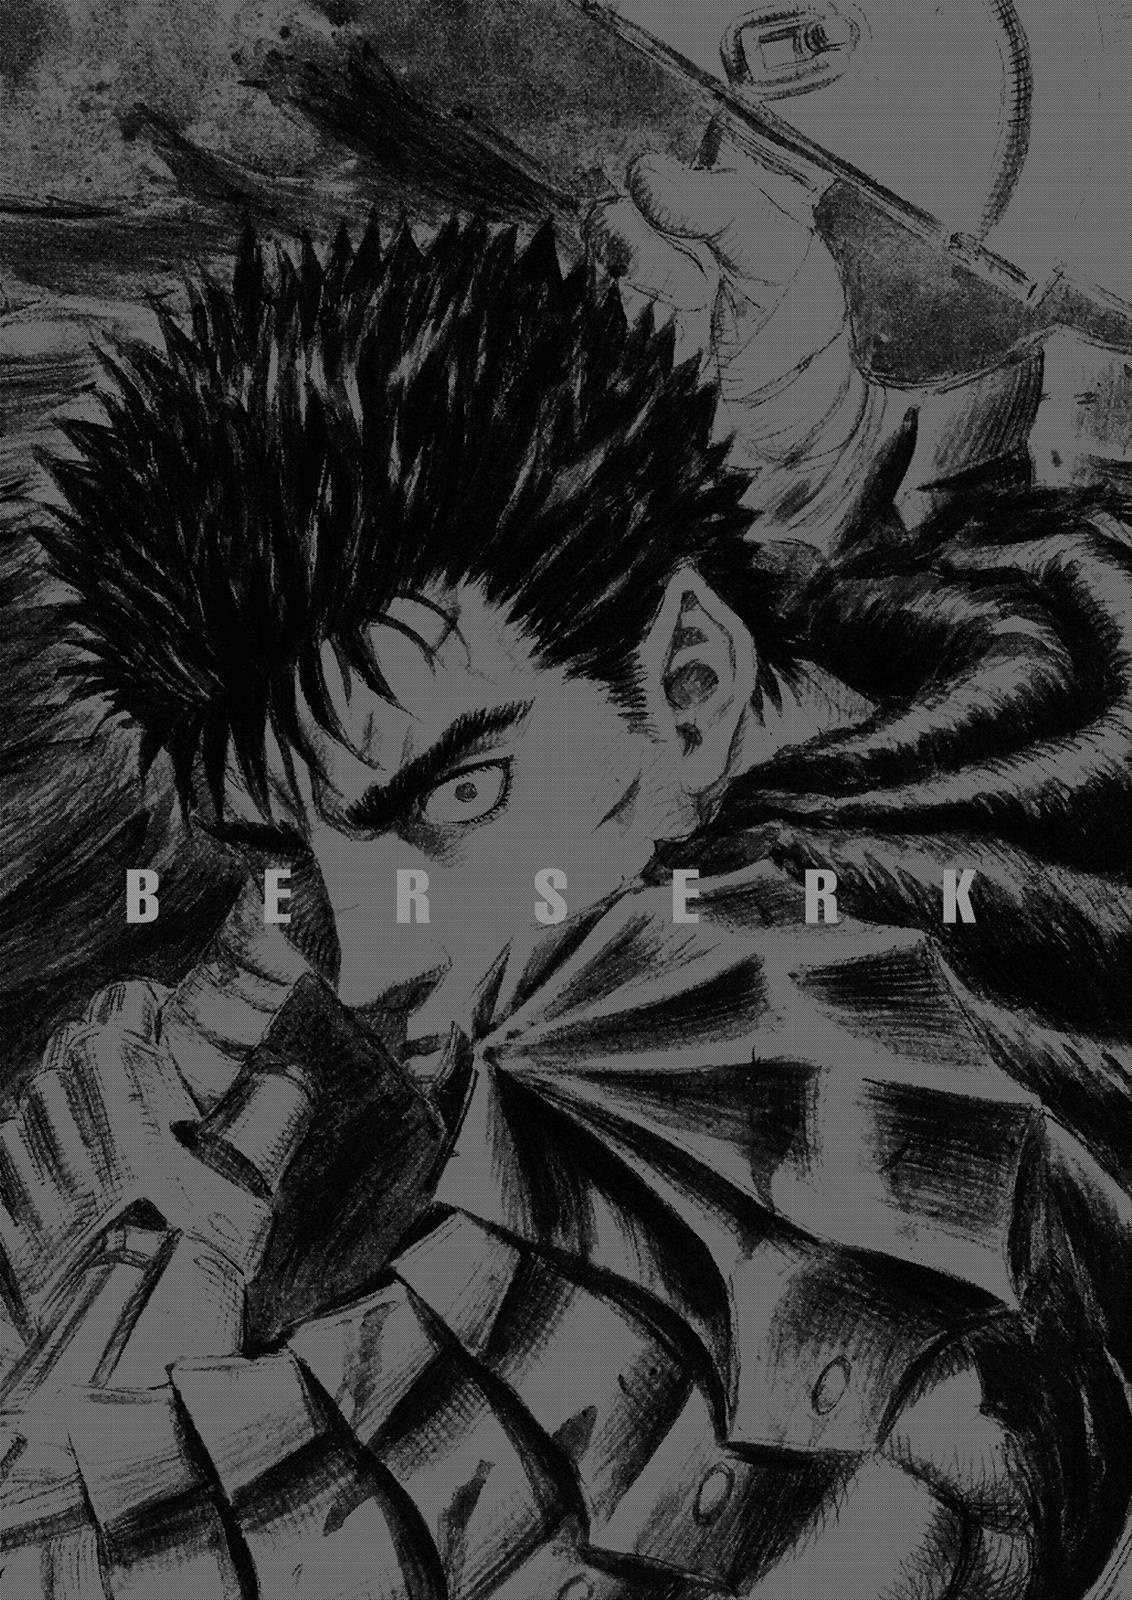 Berserk Manga Chapter 318 image 19